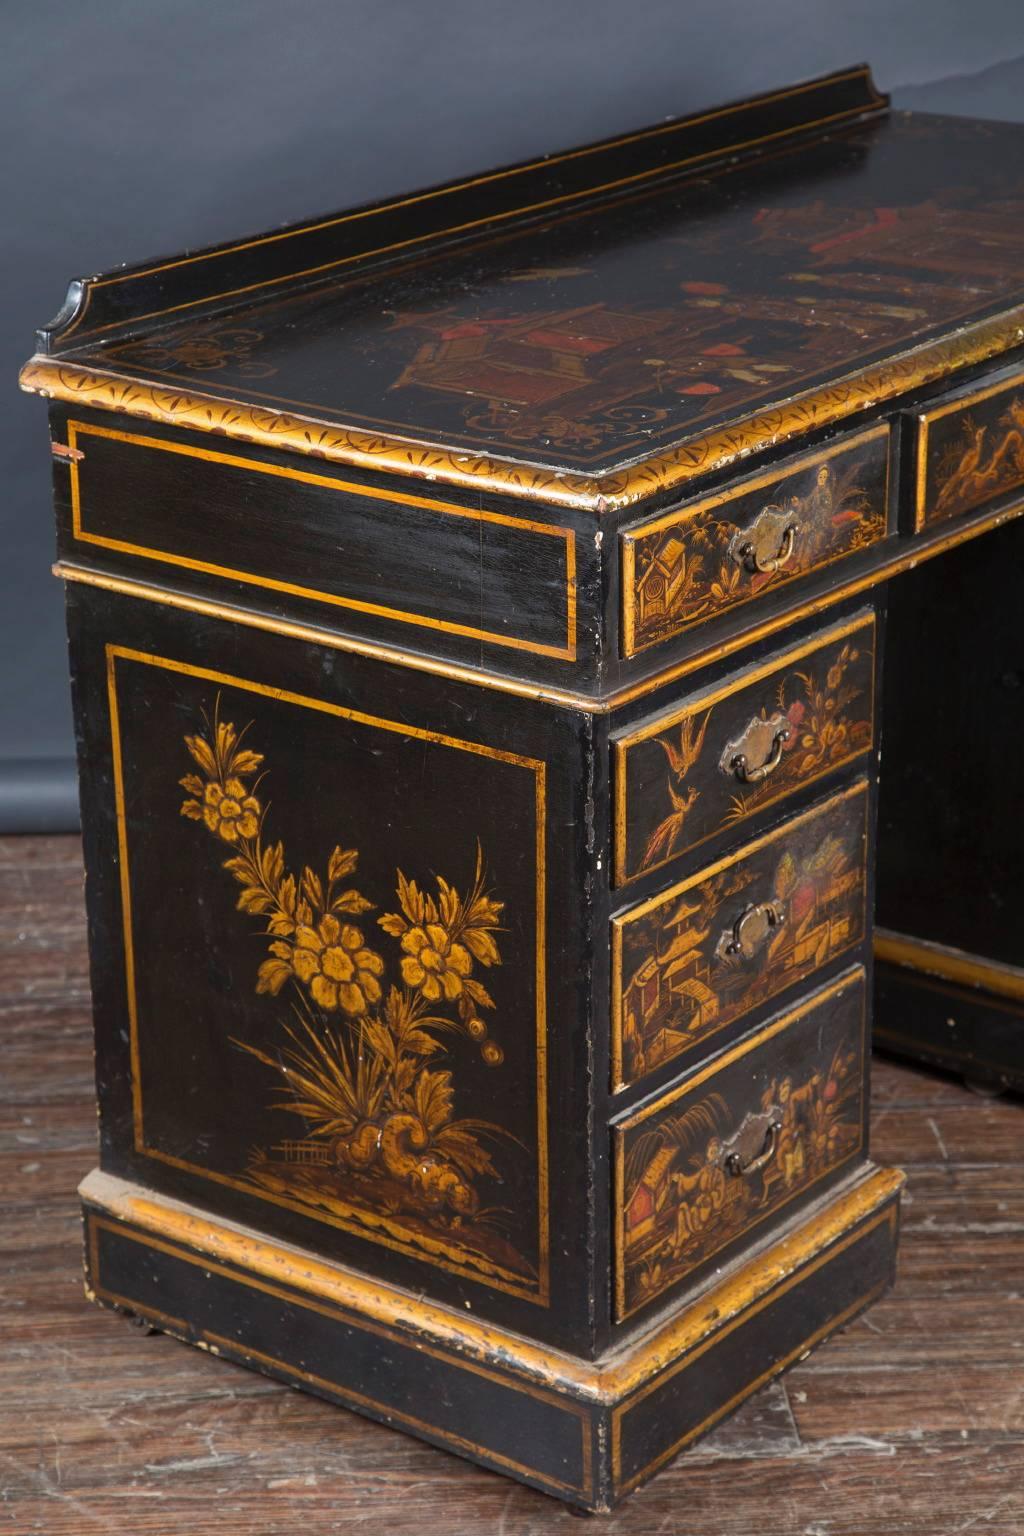 Dieser französische Chinoiserie-Schreibtisch aus dem 19. Jahrhundert mit schwarzem Lack und vergoldeten Knielöchern verfügt über beeindruckende 9 Schubladenfronten, die mit Flora, Fauna, Pagoden und klassischen japanischen Szenen verziert sind. Das